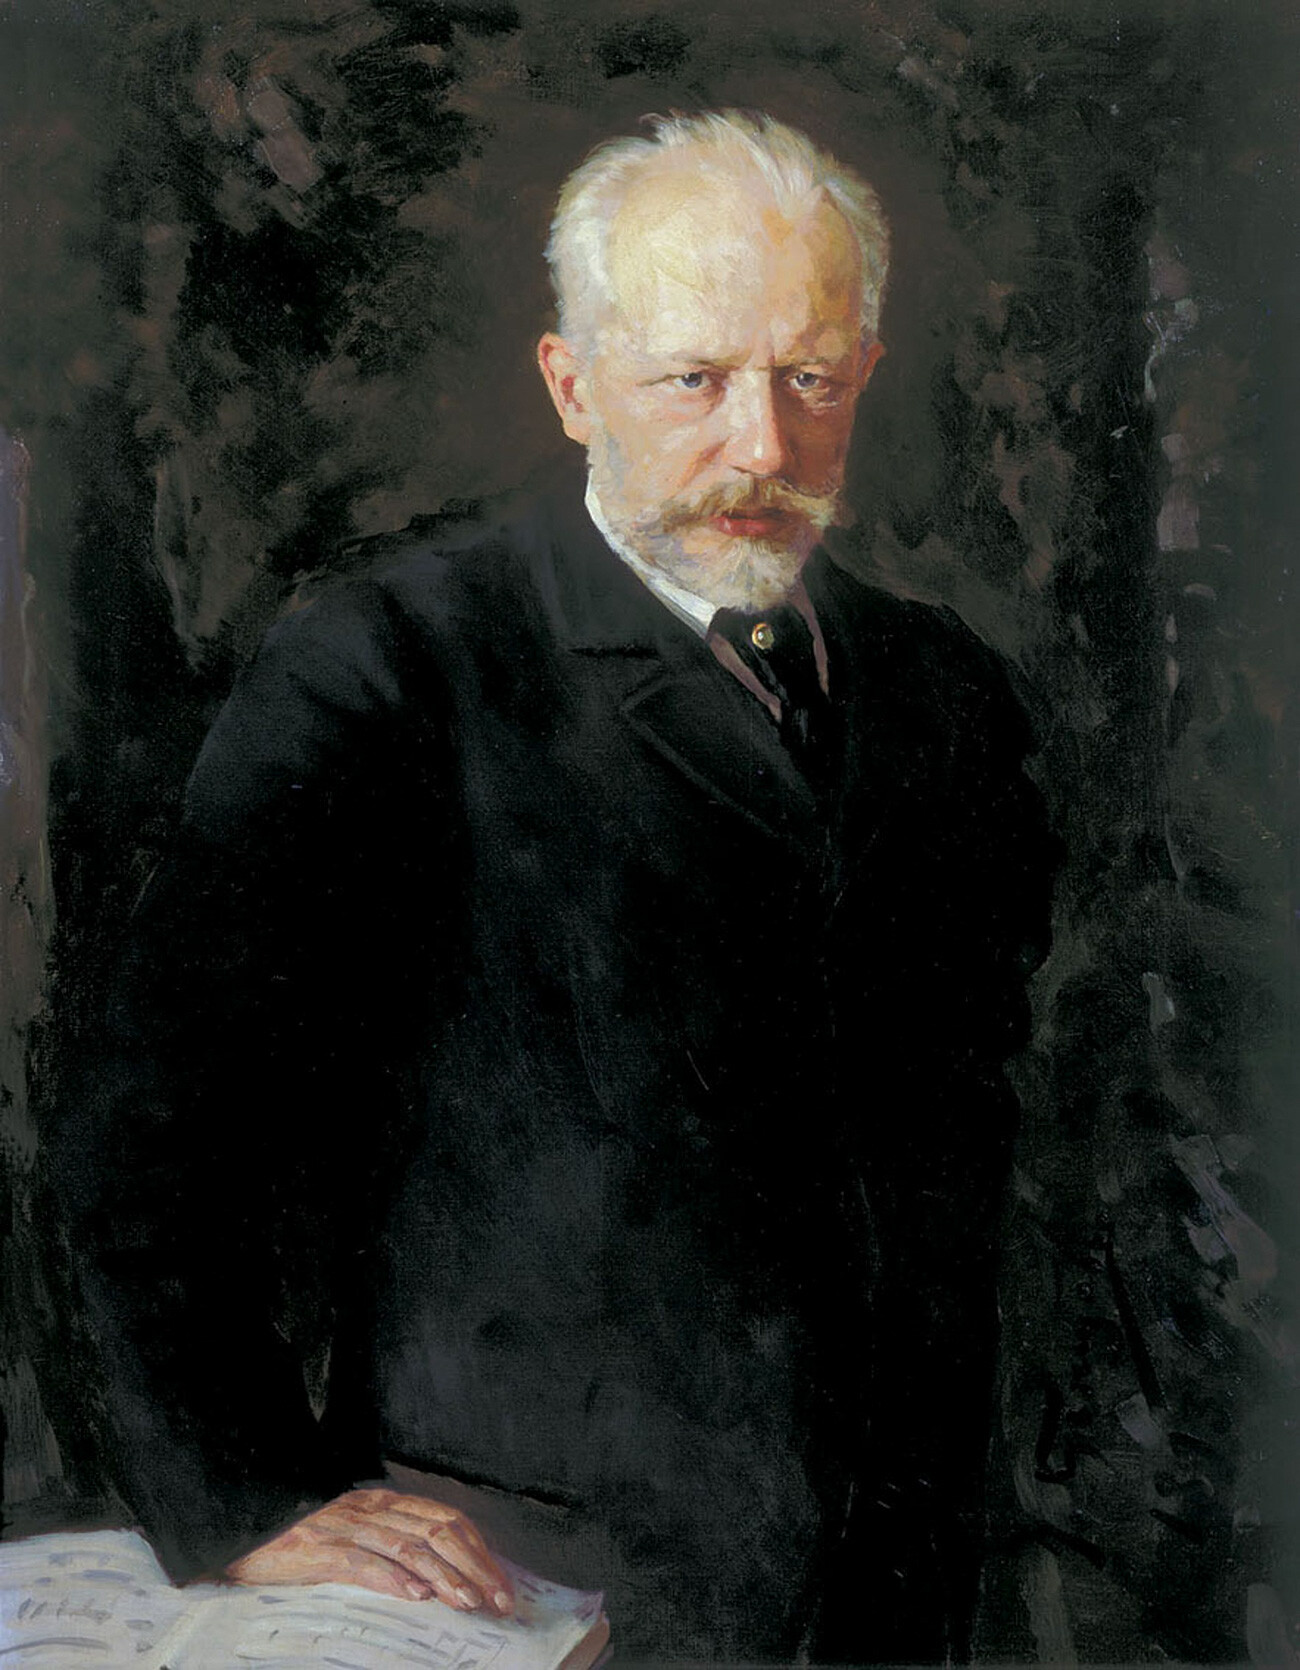 Pyotr Chaikovsky (1840-1893) by Nikolai Kuznetsov